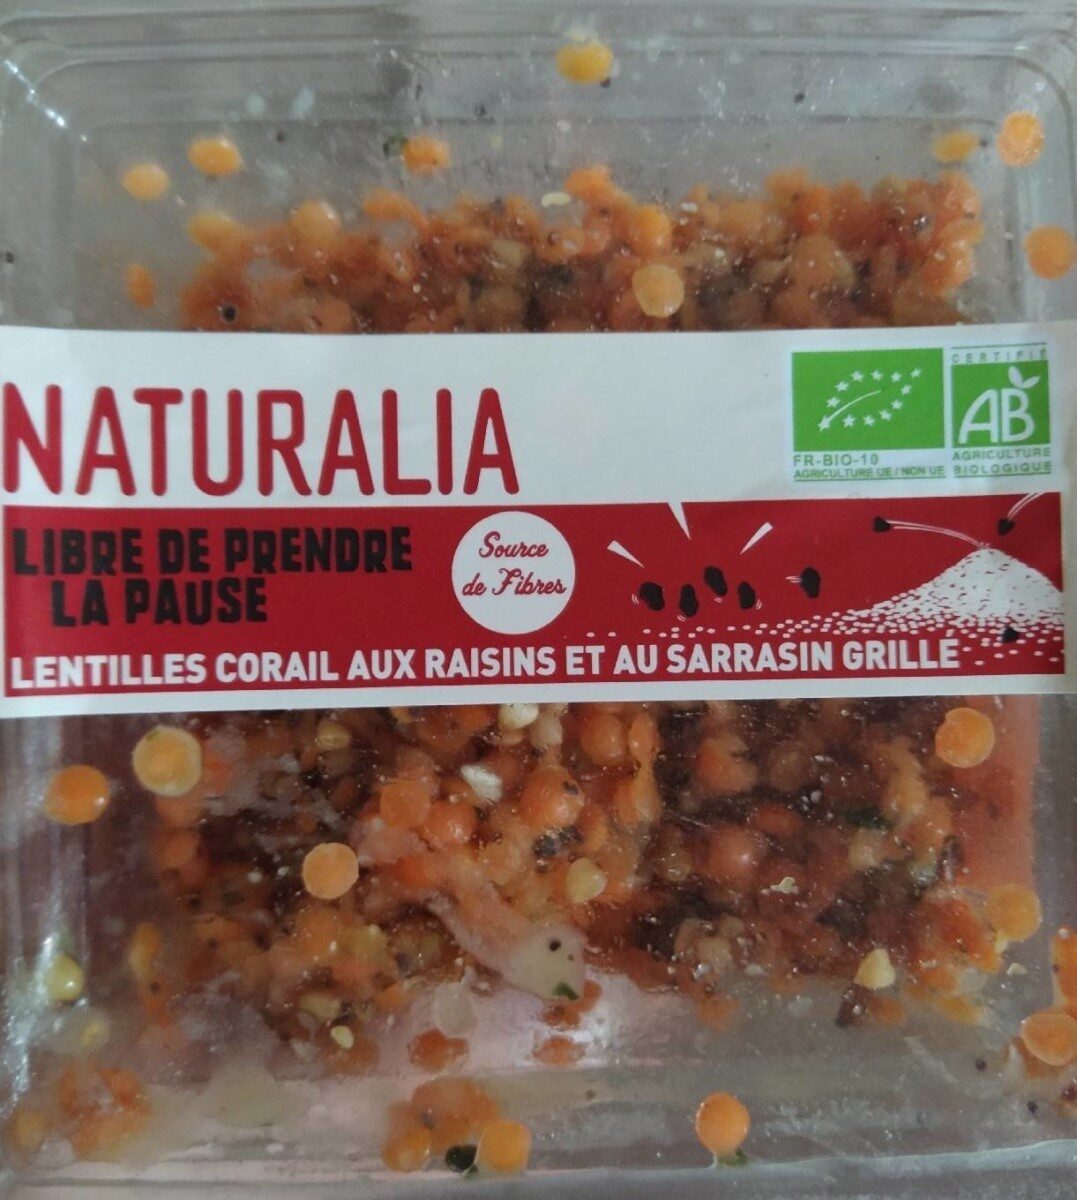 Lentilles corail aux raisins et au sarrasin grillé - Product - fr